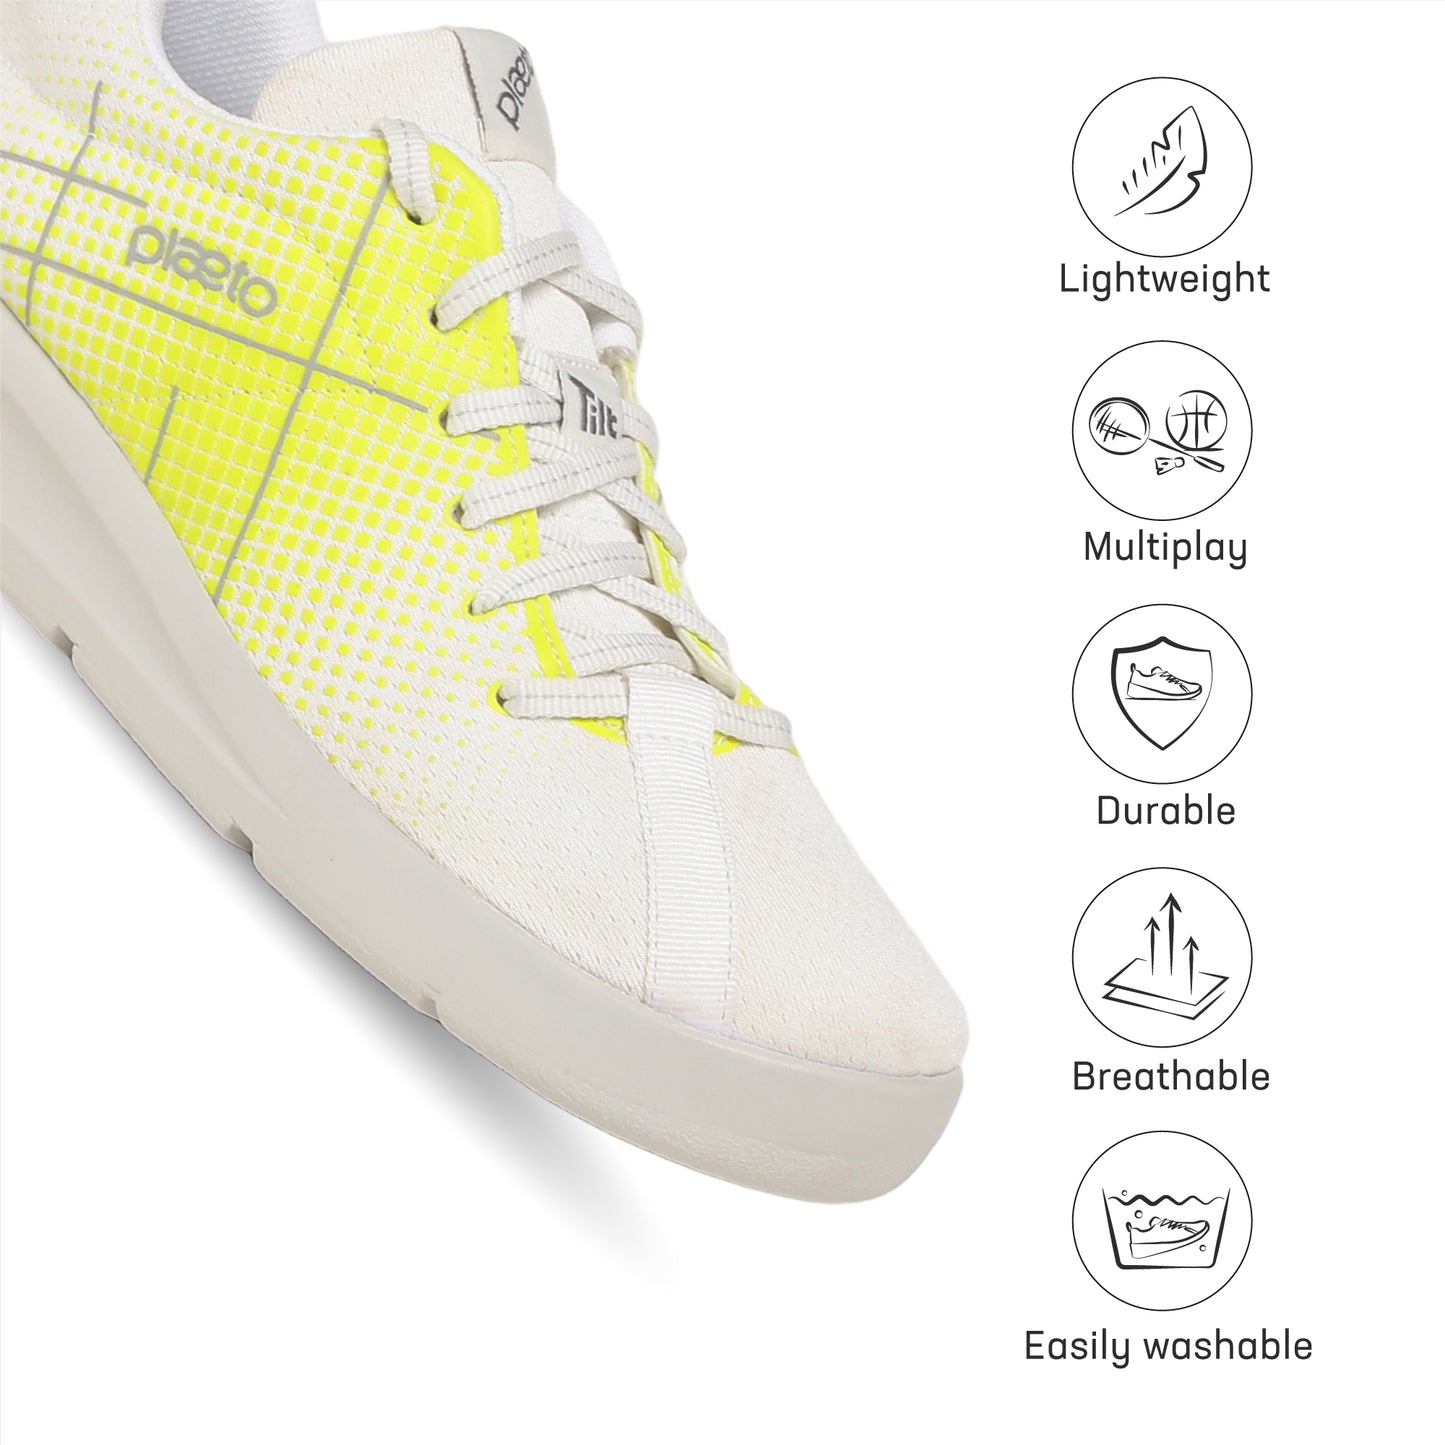 Block 5 Men's Multiplay Sneakers - White / Lemon